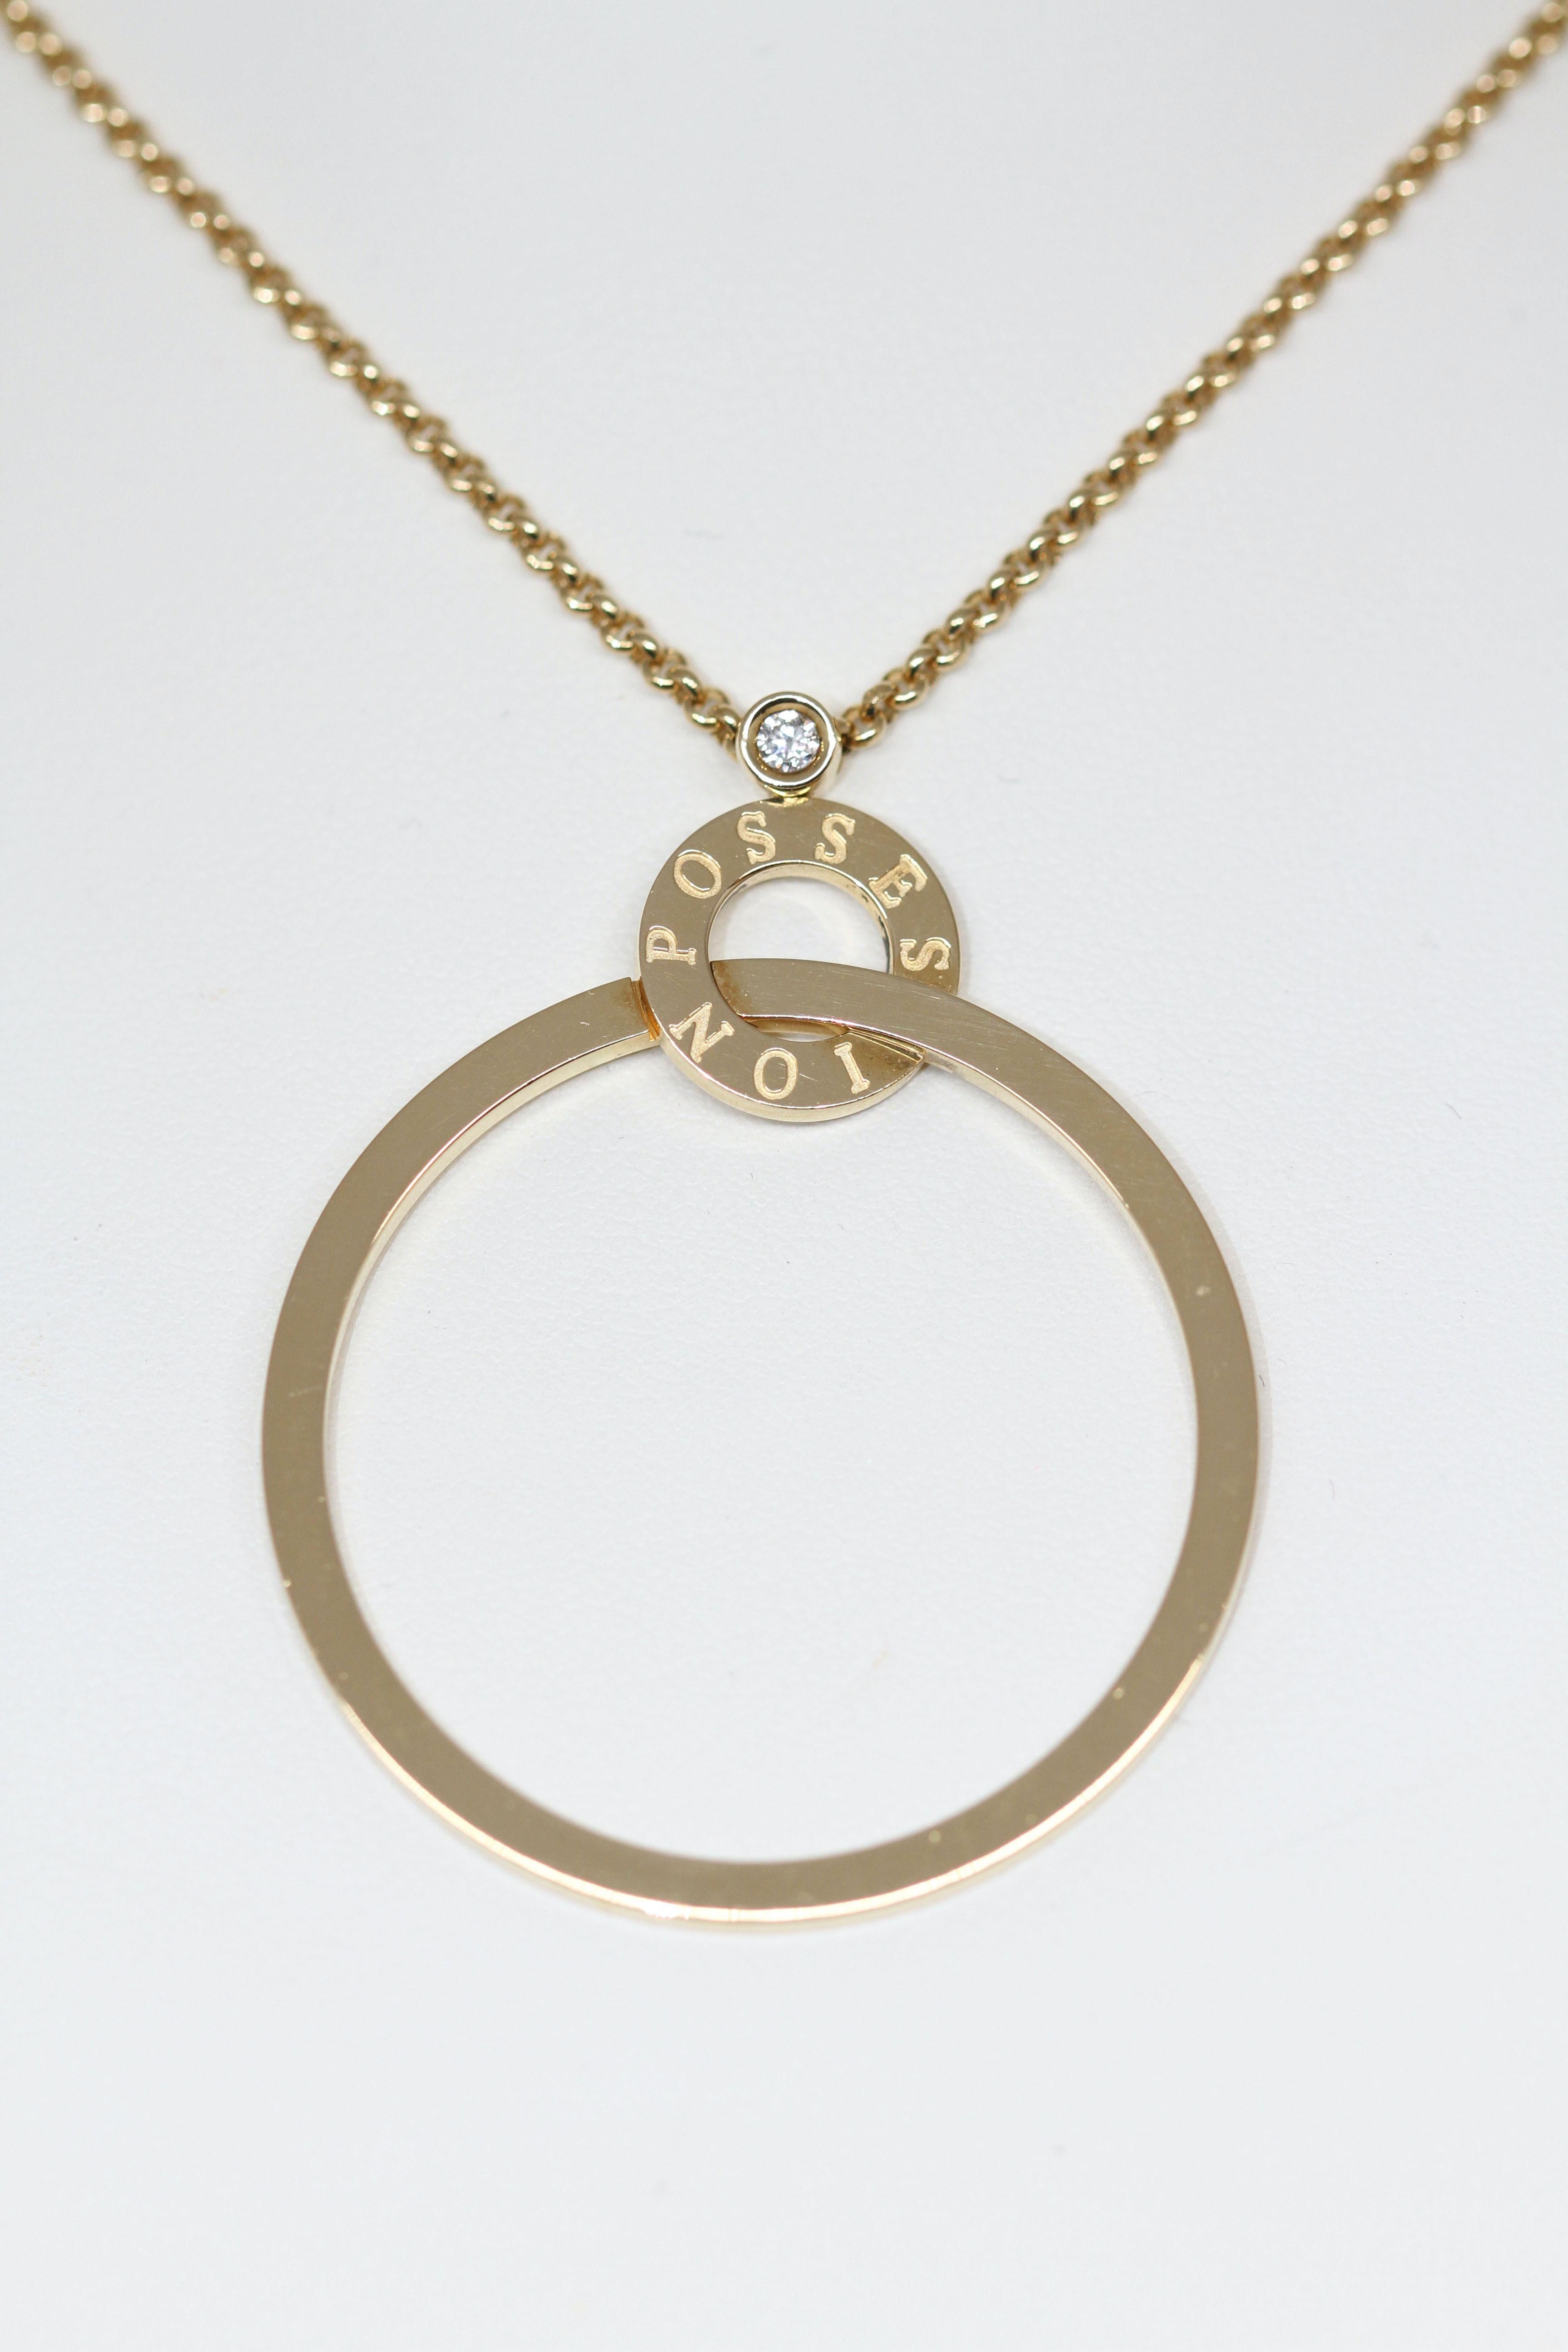 Cet élégant collier Possession de Piaget est réalisé en or jaune 18 carats. 
Il est composé d'une bague gravée Possession en or jaune tenant un grand anneau en or.
Le motif est rehaussé d'un magnifique diamant sur le dessus - taille brillant